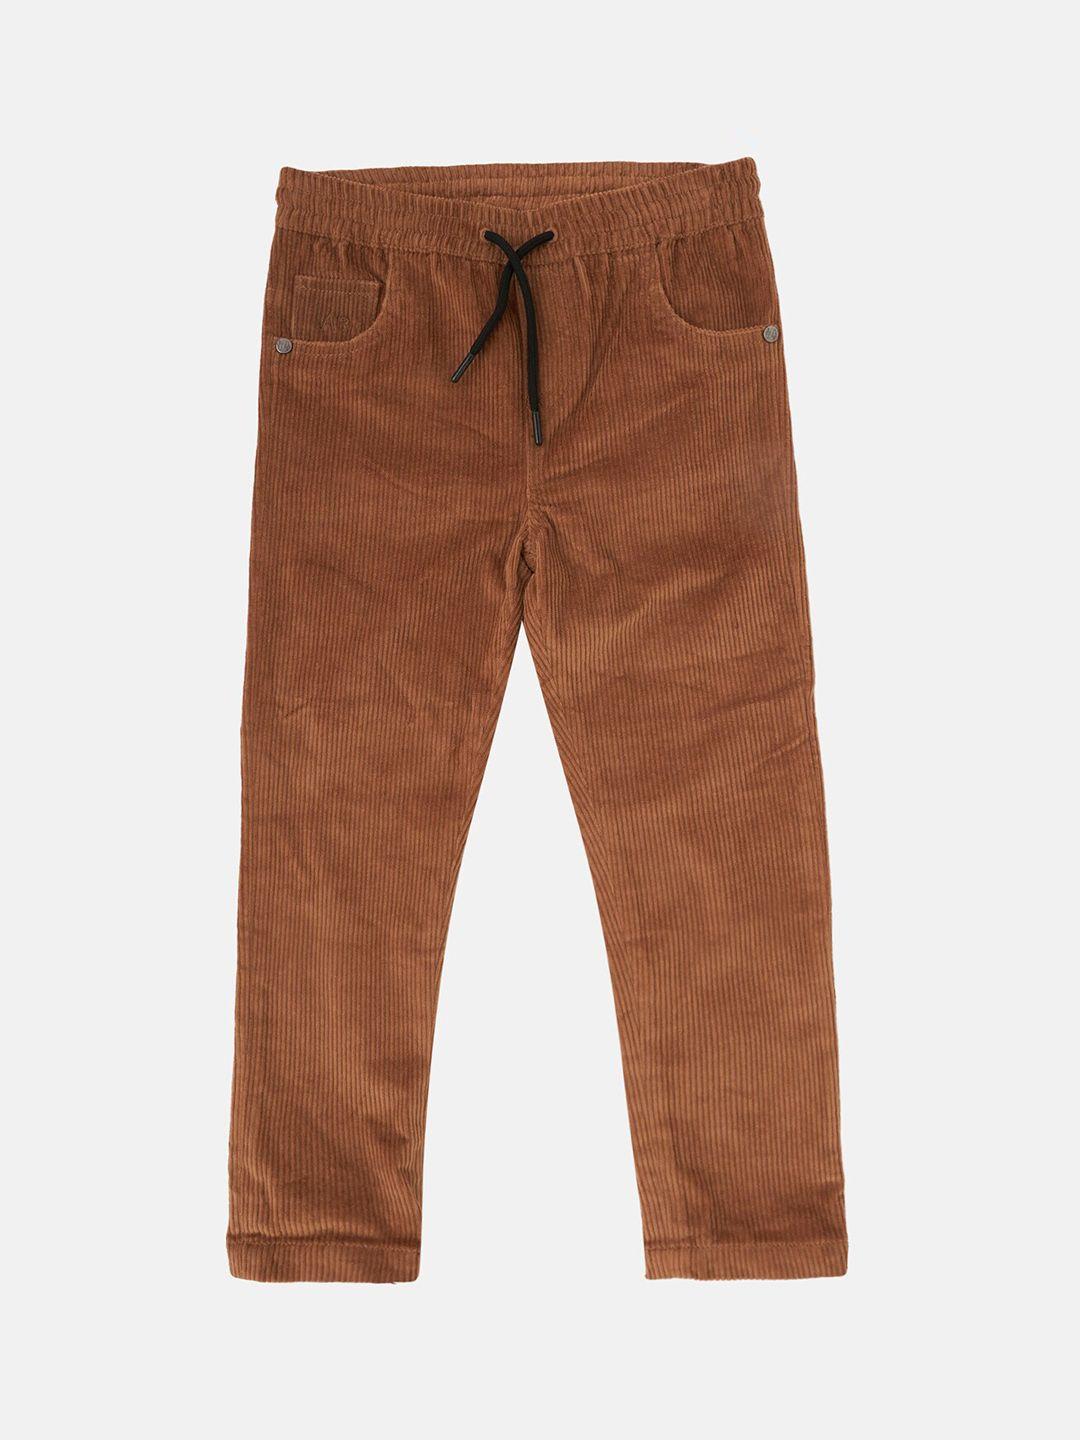 angel & rocket boys brown smart trousers